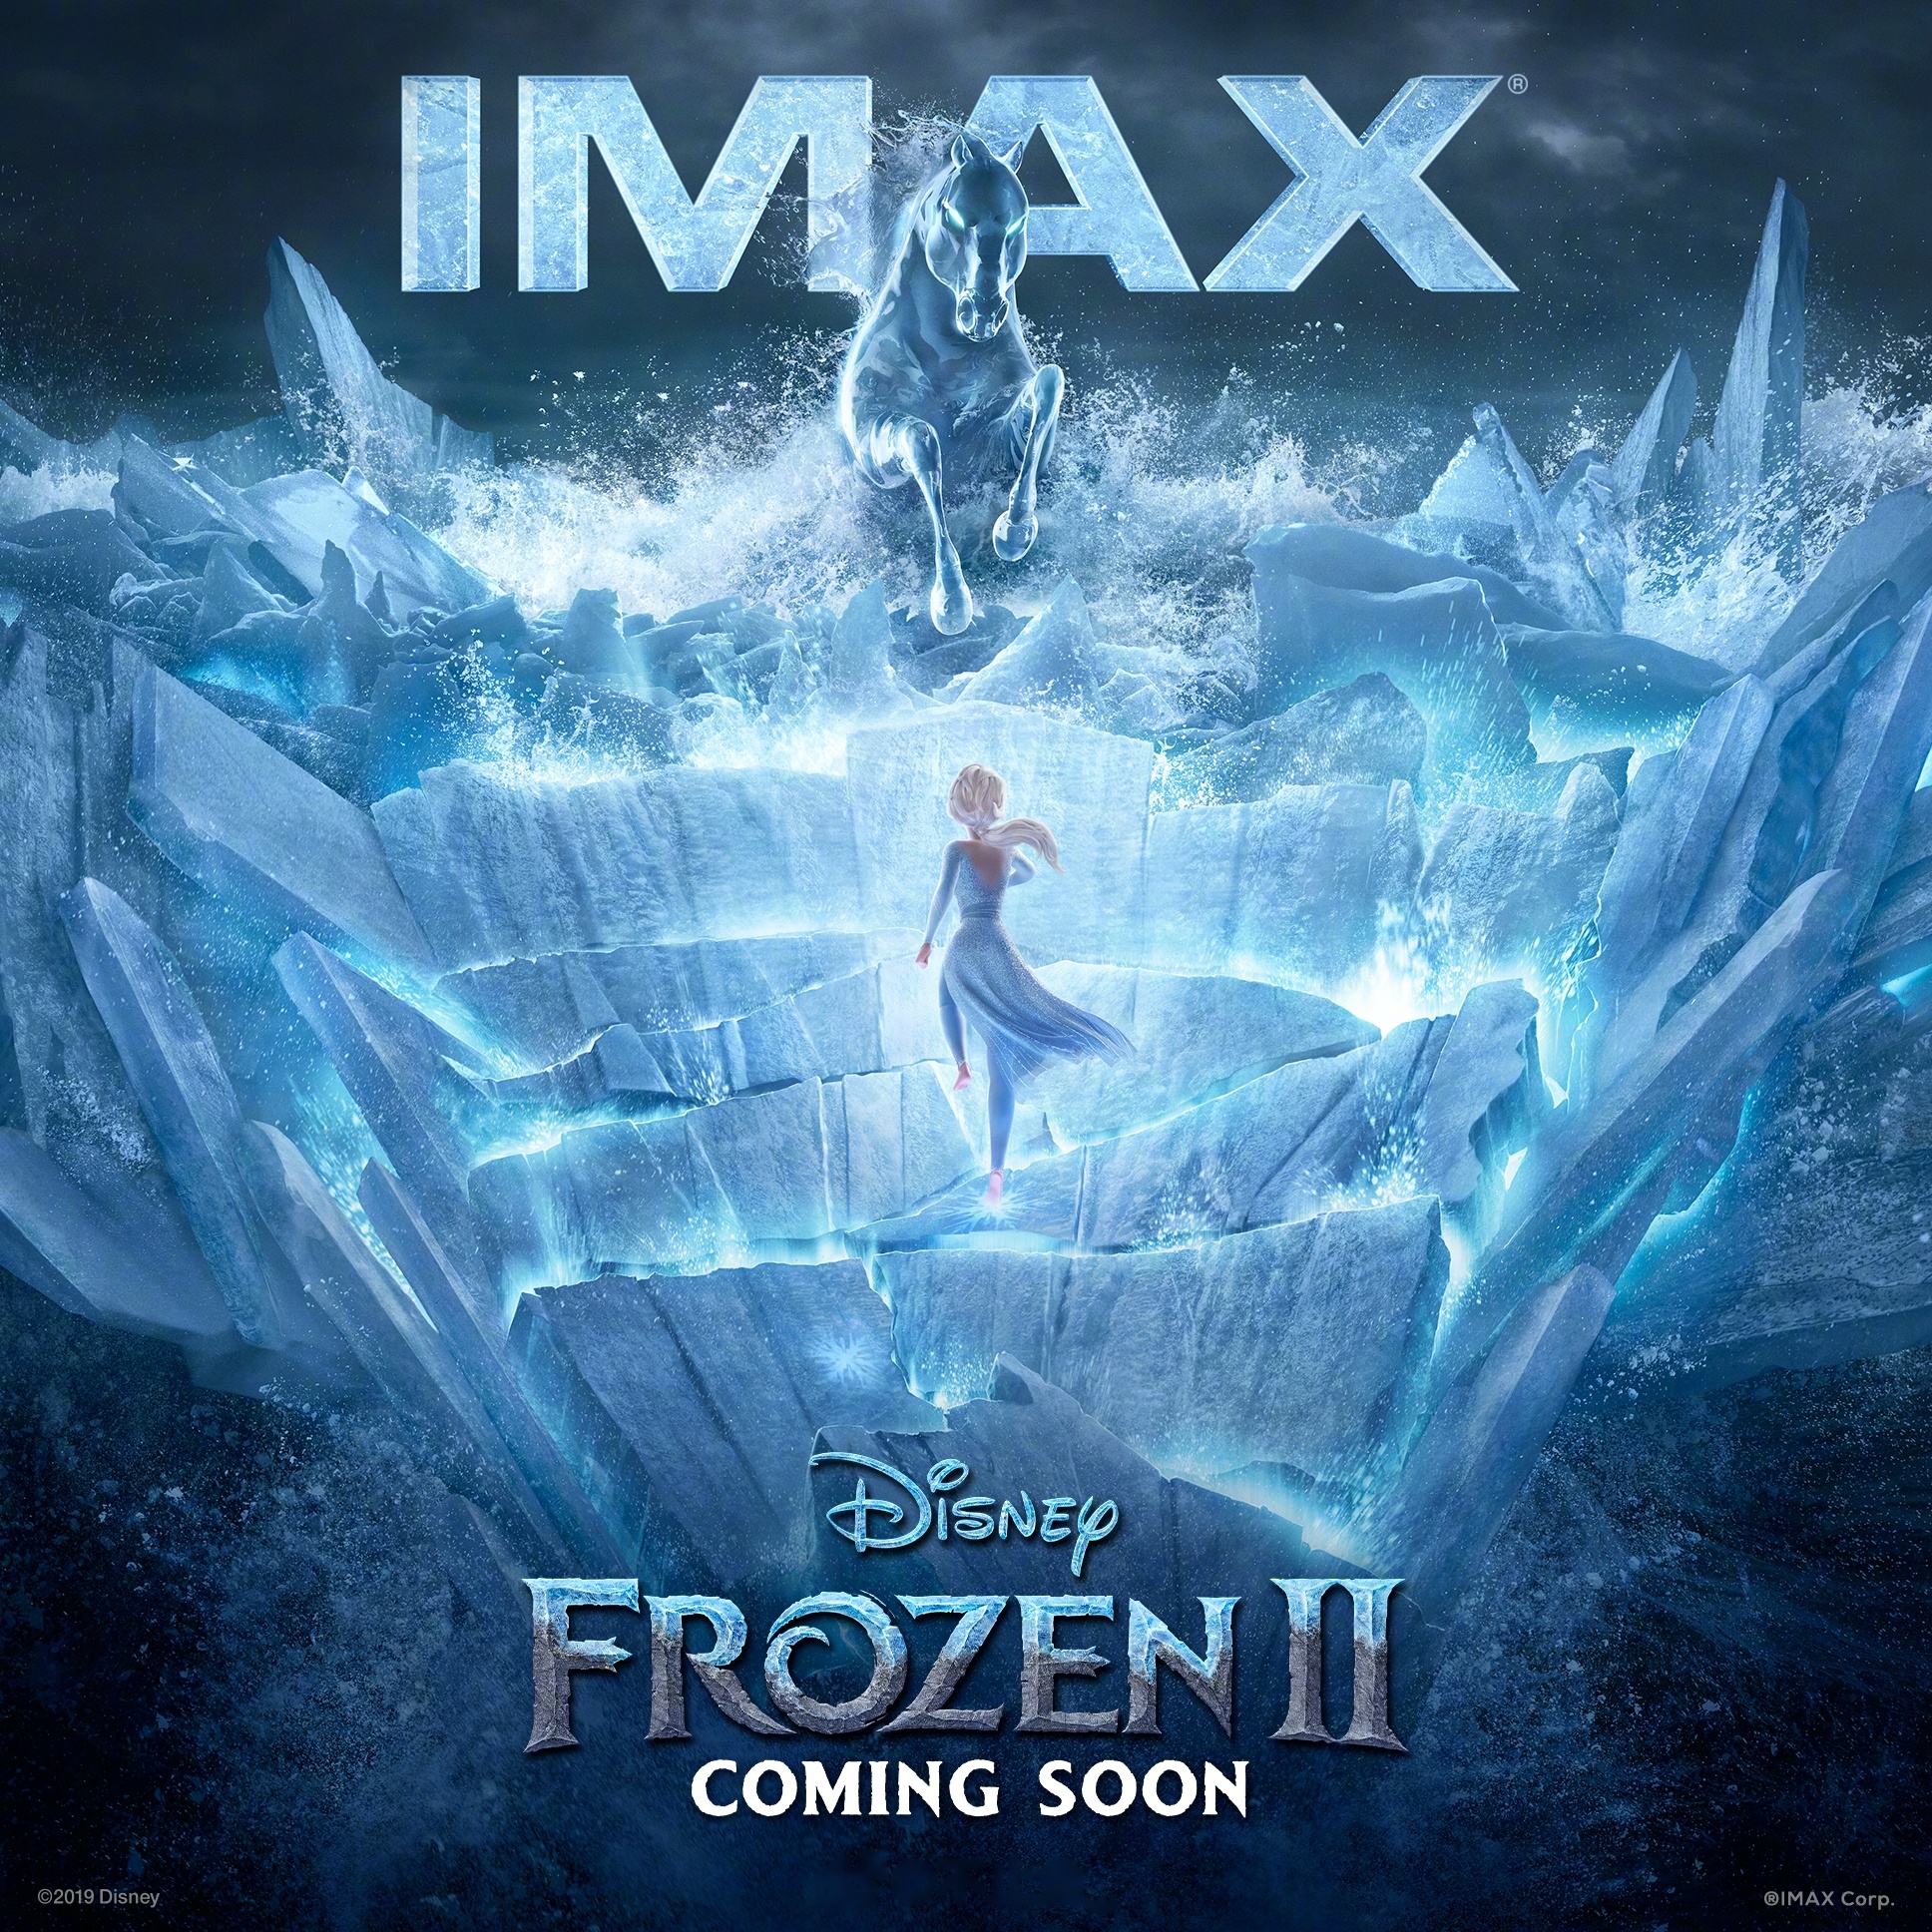 电影《冰雪奇缘2》发布imax海报,内地定档11月22日上映  elsa这是穿了